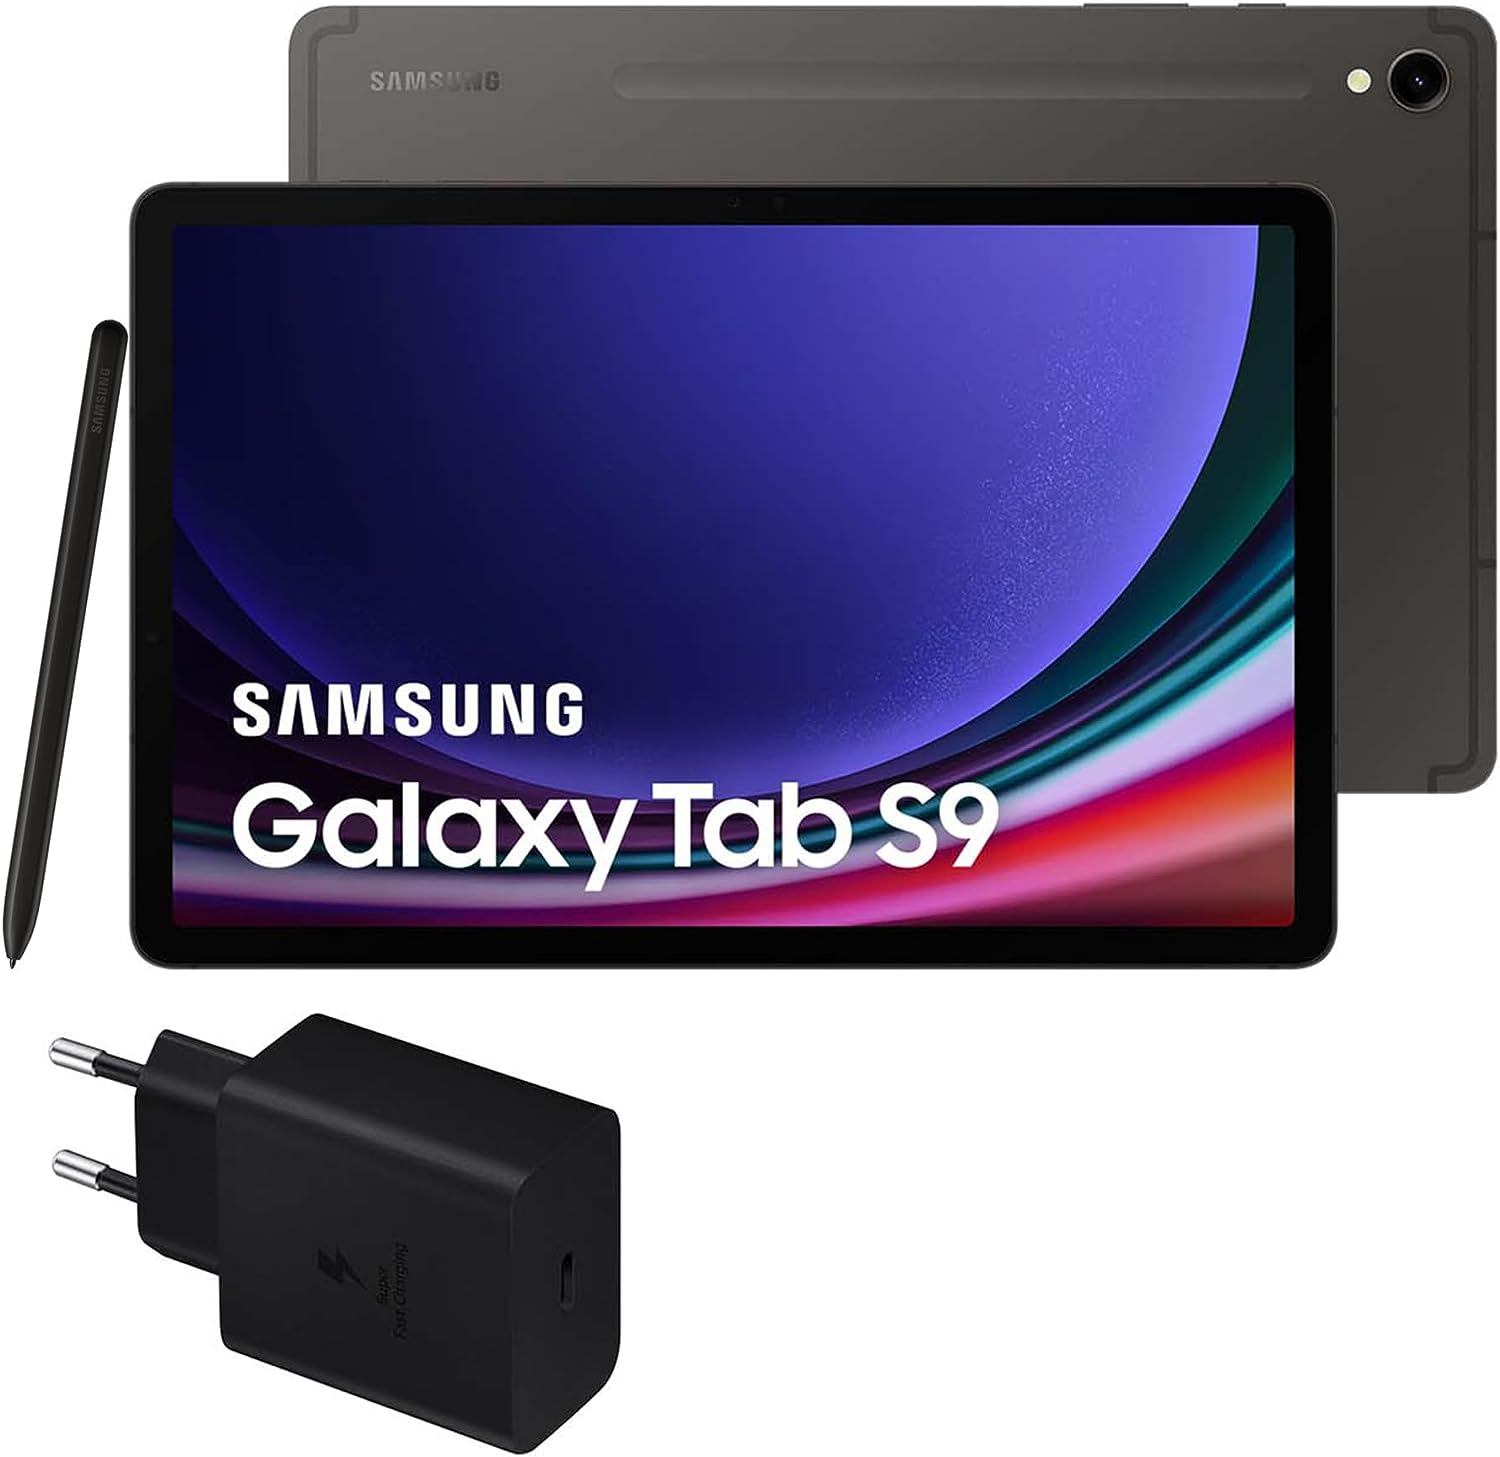 Samsung Galaxy Tab S9 versus Samsung Galaxy Tab S9+ versus Samsung Galaxy Tab S9 Ultra